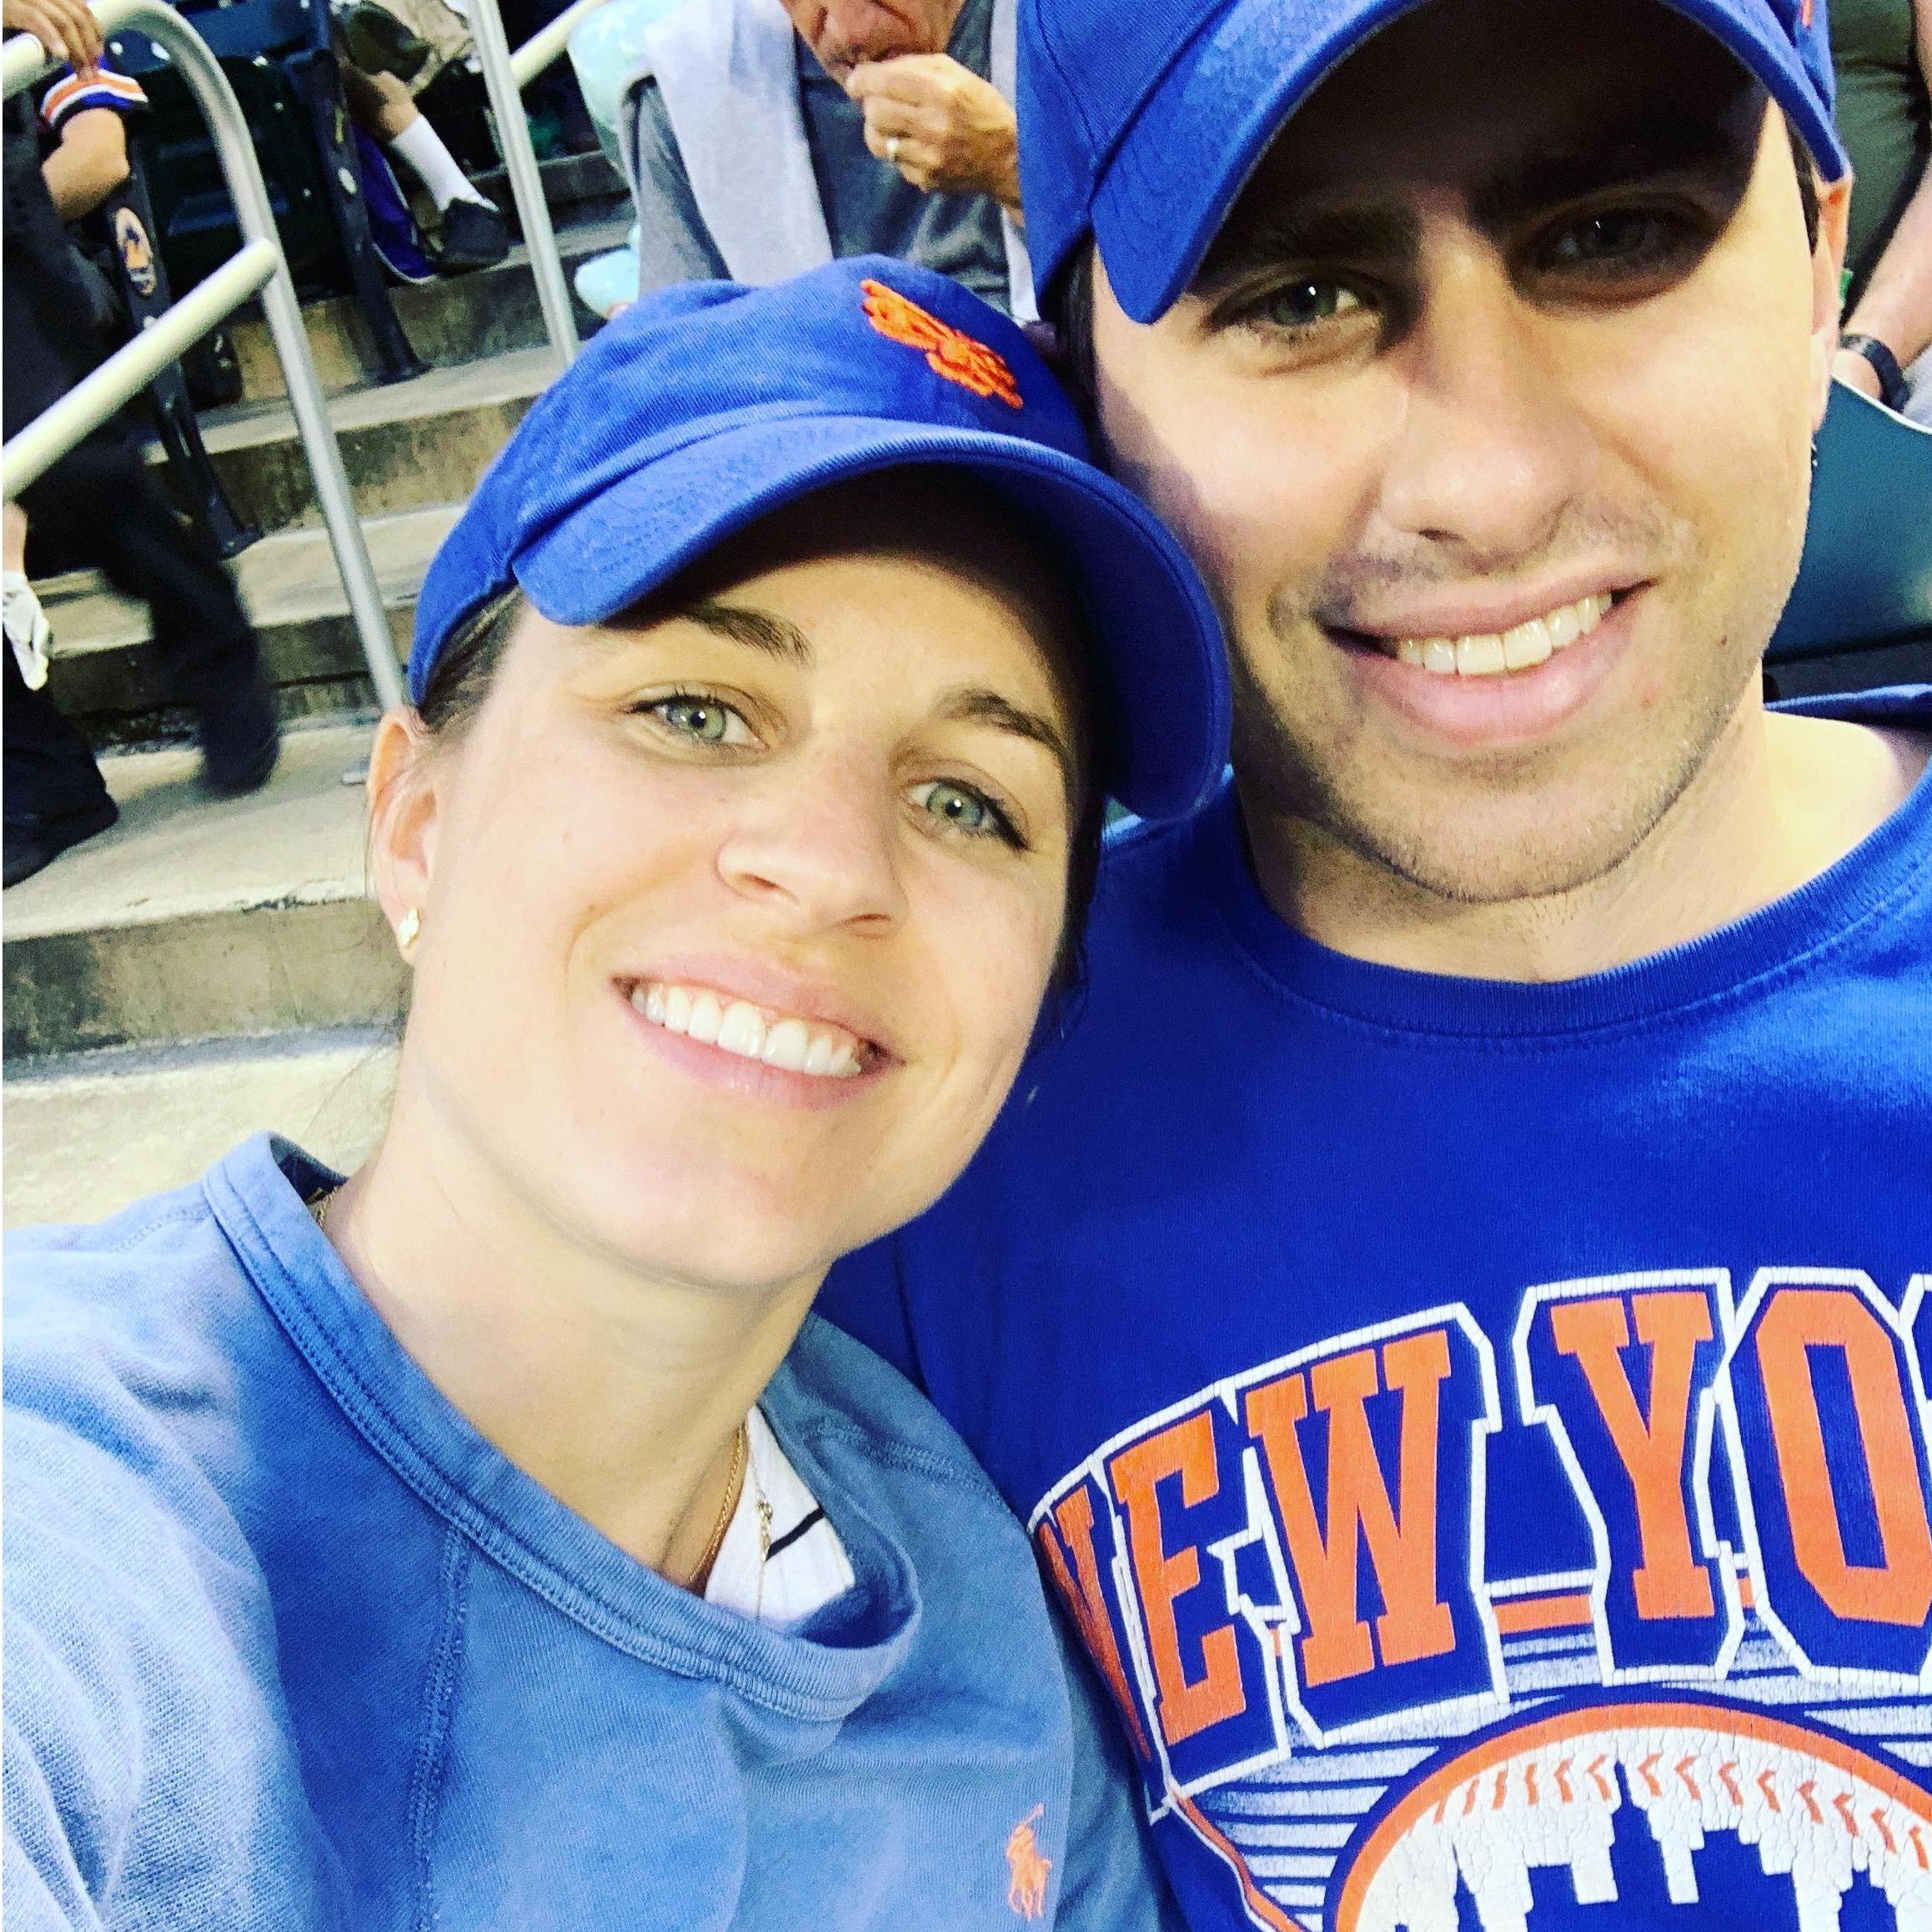 Mets! Mets! Mets!
June 2019